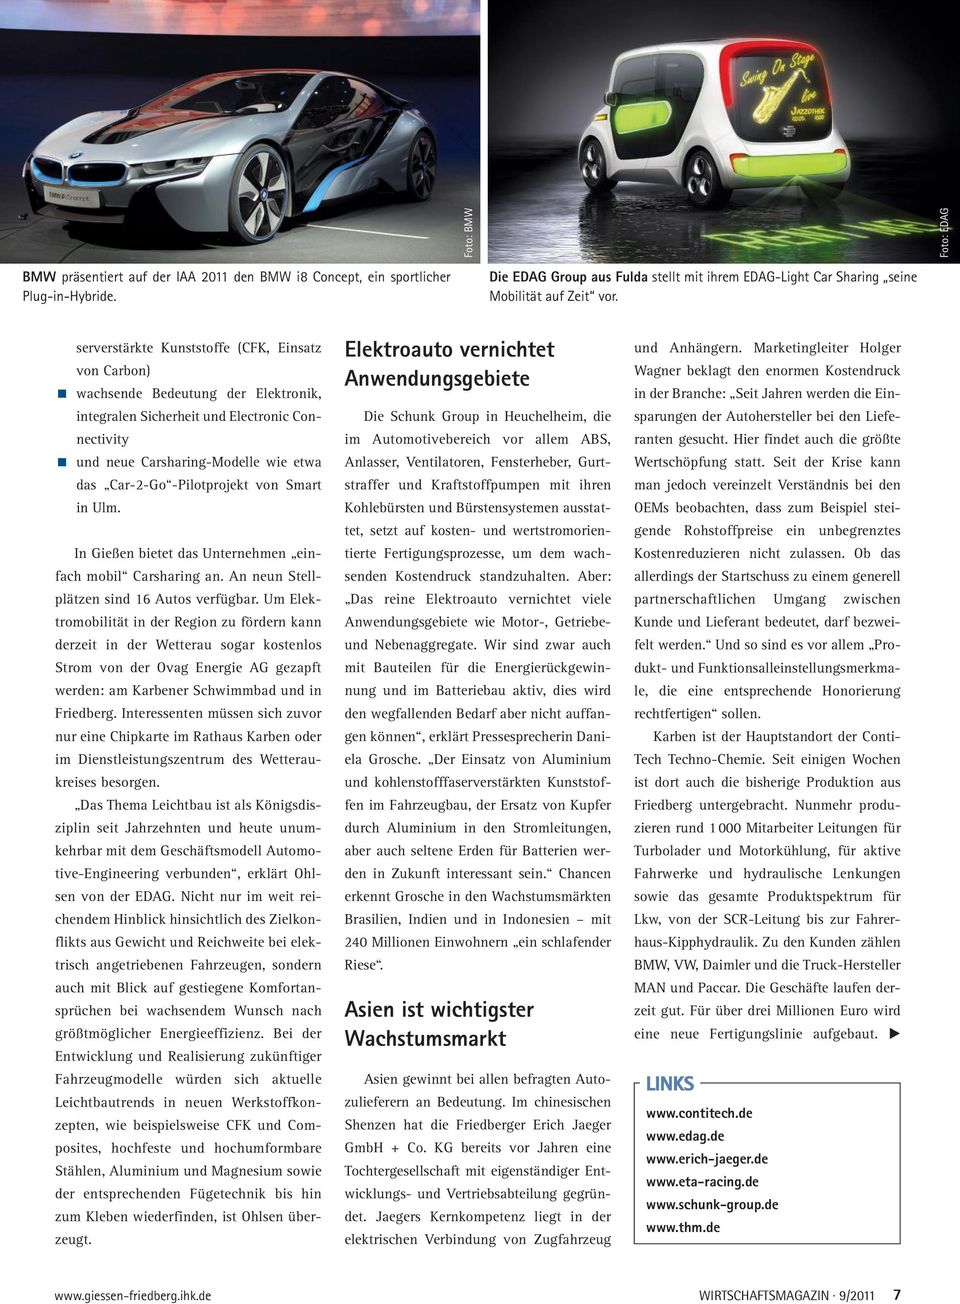 serverstärkte Kunststoffe (CFK, Einsatz von Carbon) wachsende Bedeutung der Elektronik, integralen Sicherheit und Electronic Connectivity und neue Carsharing-Modelle wie etwa das Car-2-Go